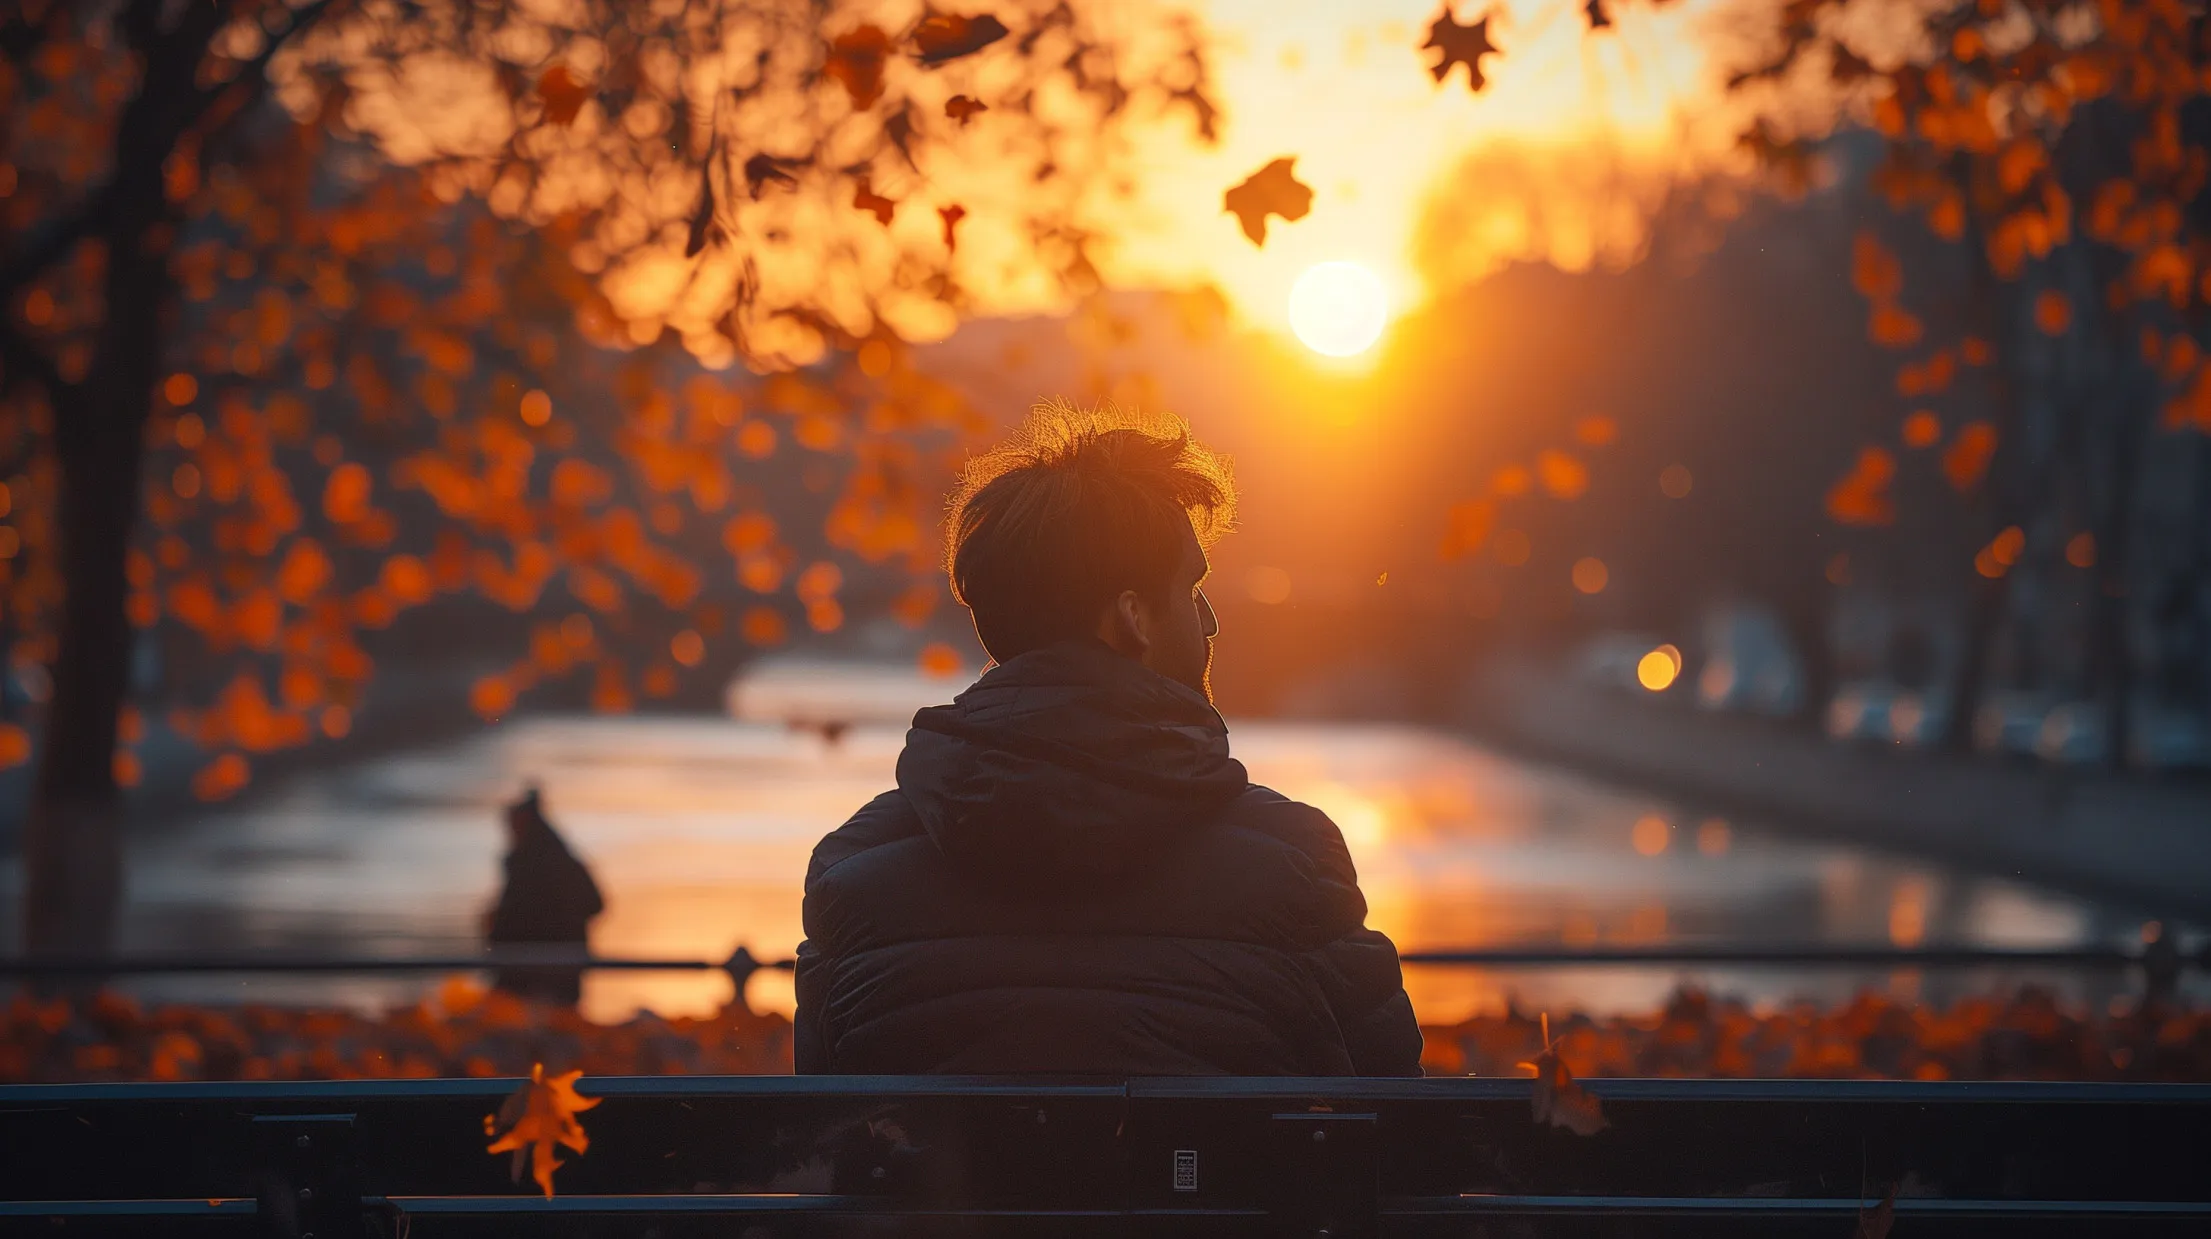 Frasi per riflettere - uomo seduto su una panchina che guarda un lago durante il tramonto